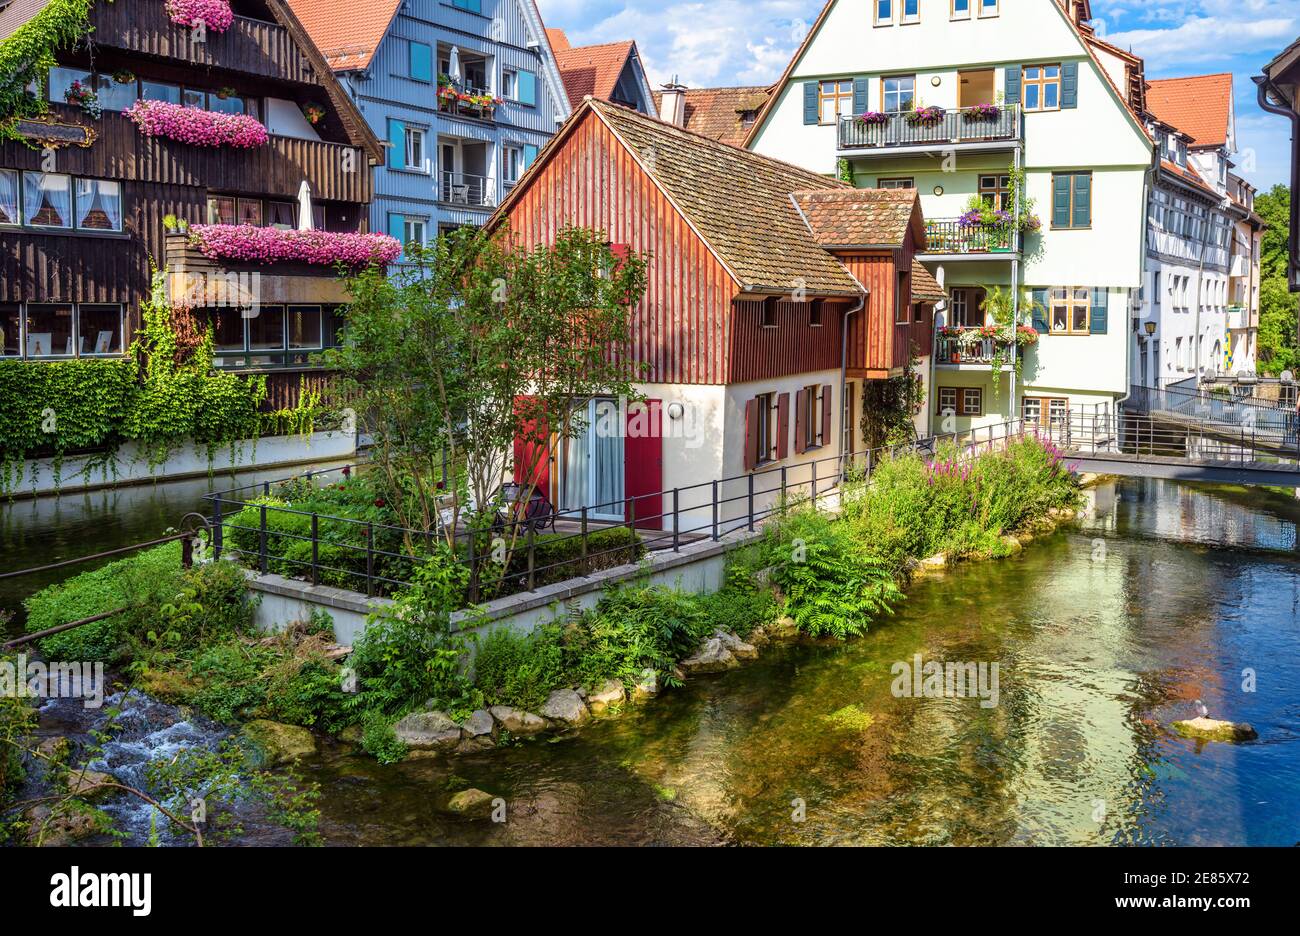 Ulm ciudad, Alemania. Bonita vista de las hermosas casas antiguas y los canales en el histórico barrio de los pescadores. Este lugar es la famosa atracción turística de Ulm. SCE Foto de stock